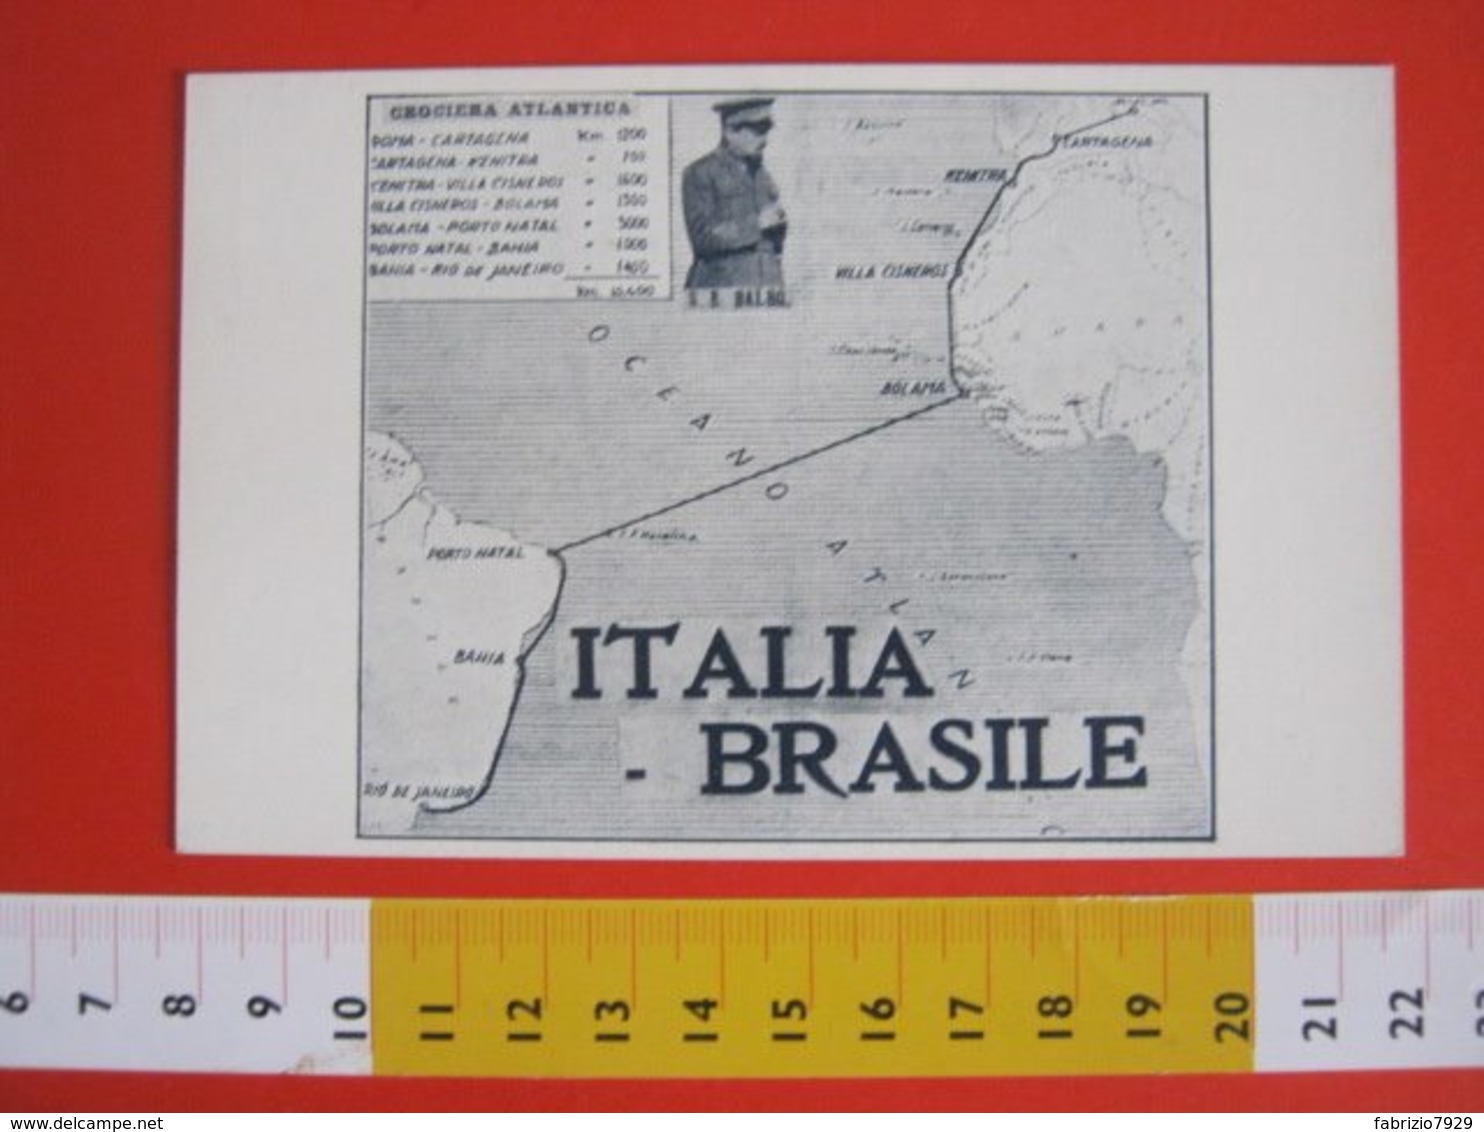 GCB ITALIA 1930 ITALO BALBO CROCIERA ATLANTICA BRASILE ROMA RIO DE JANEIRO 10400 KM MAPPA ATLANTICO AIR AVIAZIONE AEREO - Aviatori